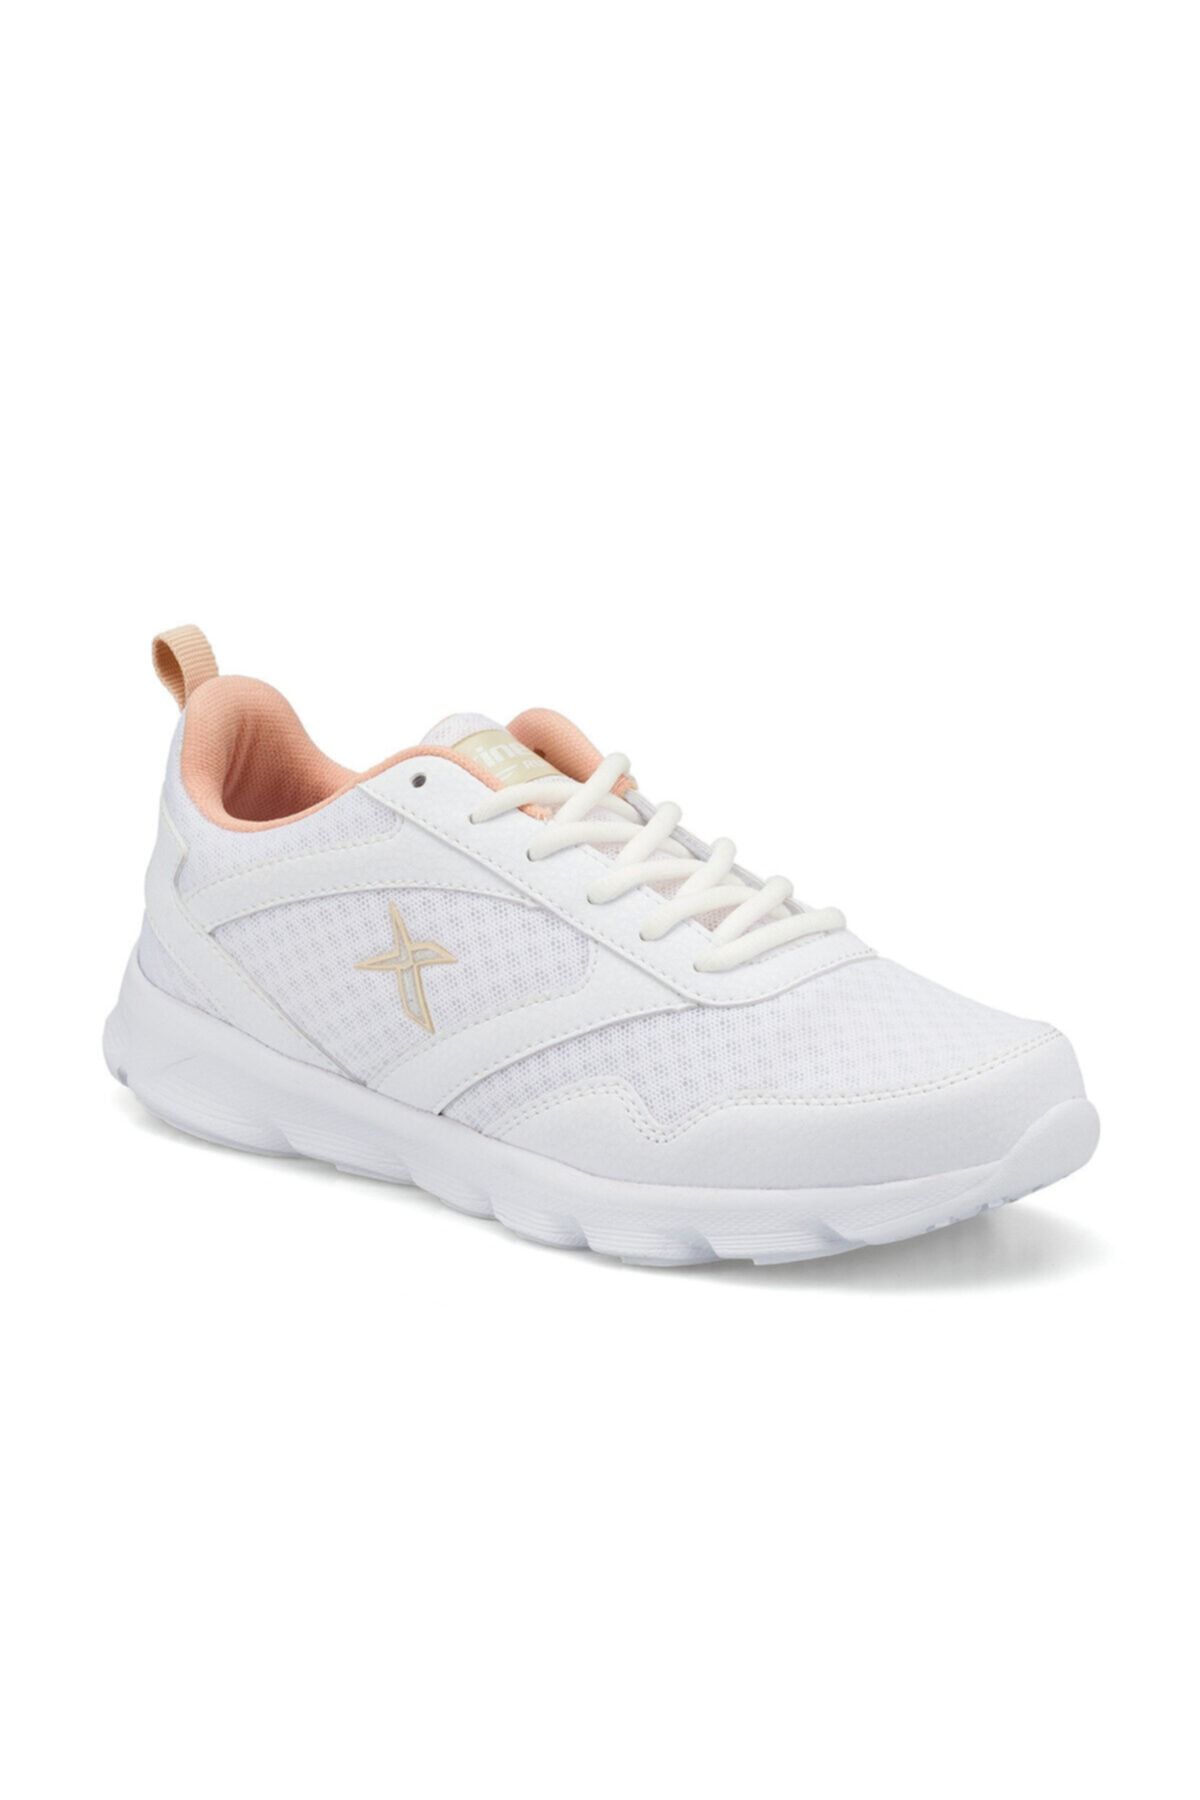 Kinetix MERUS W Beyaz Kadın Koşu Ayakkabısı 100502959